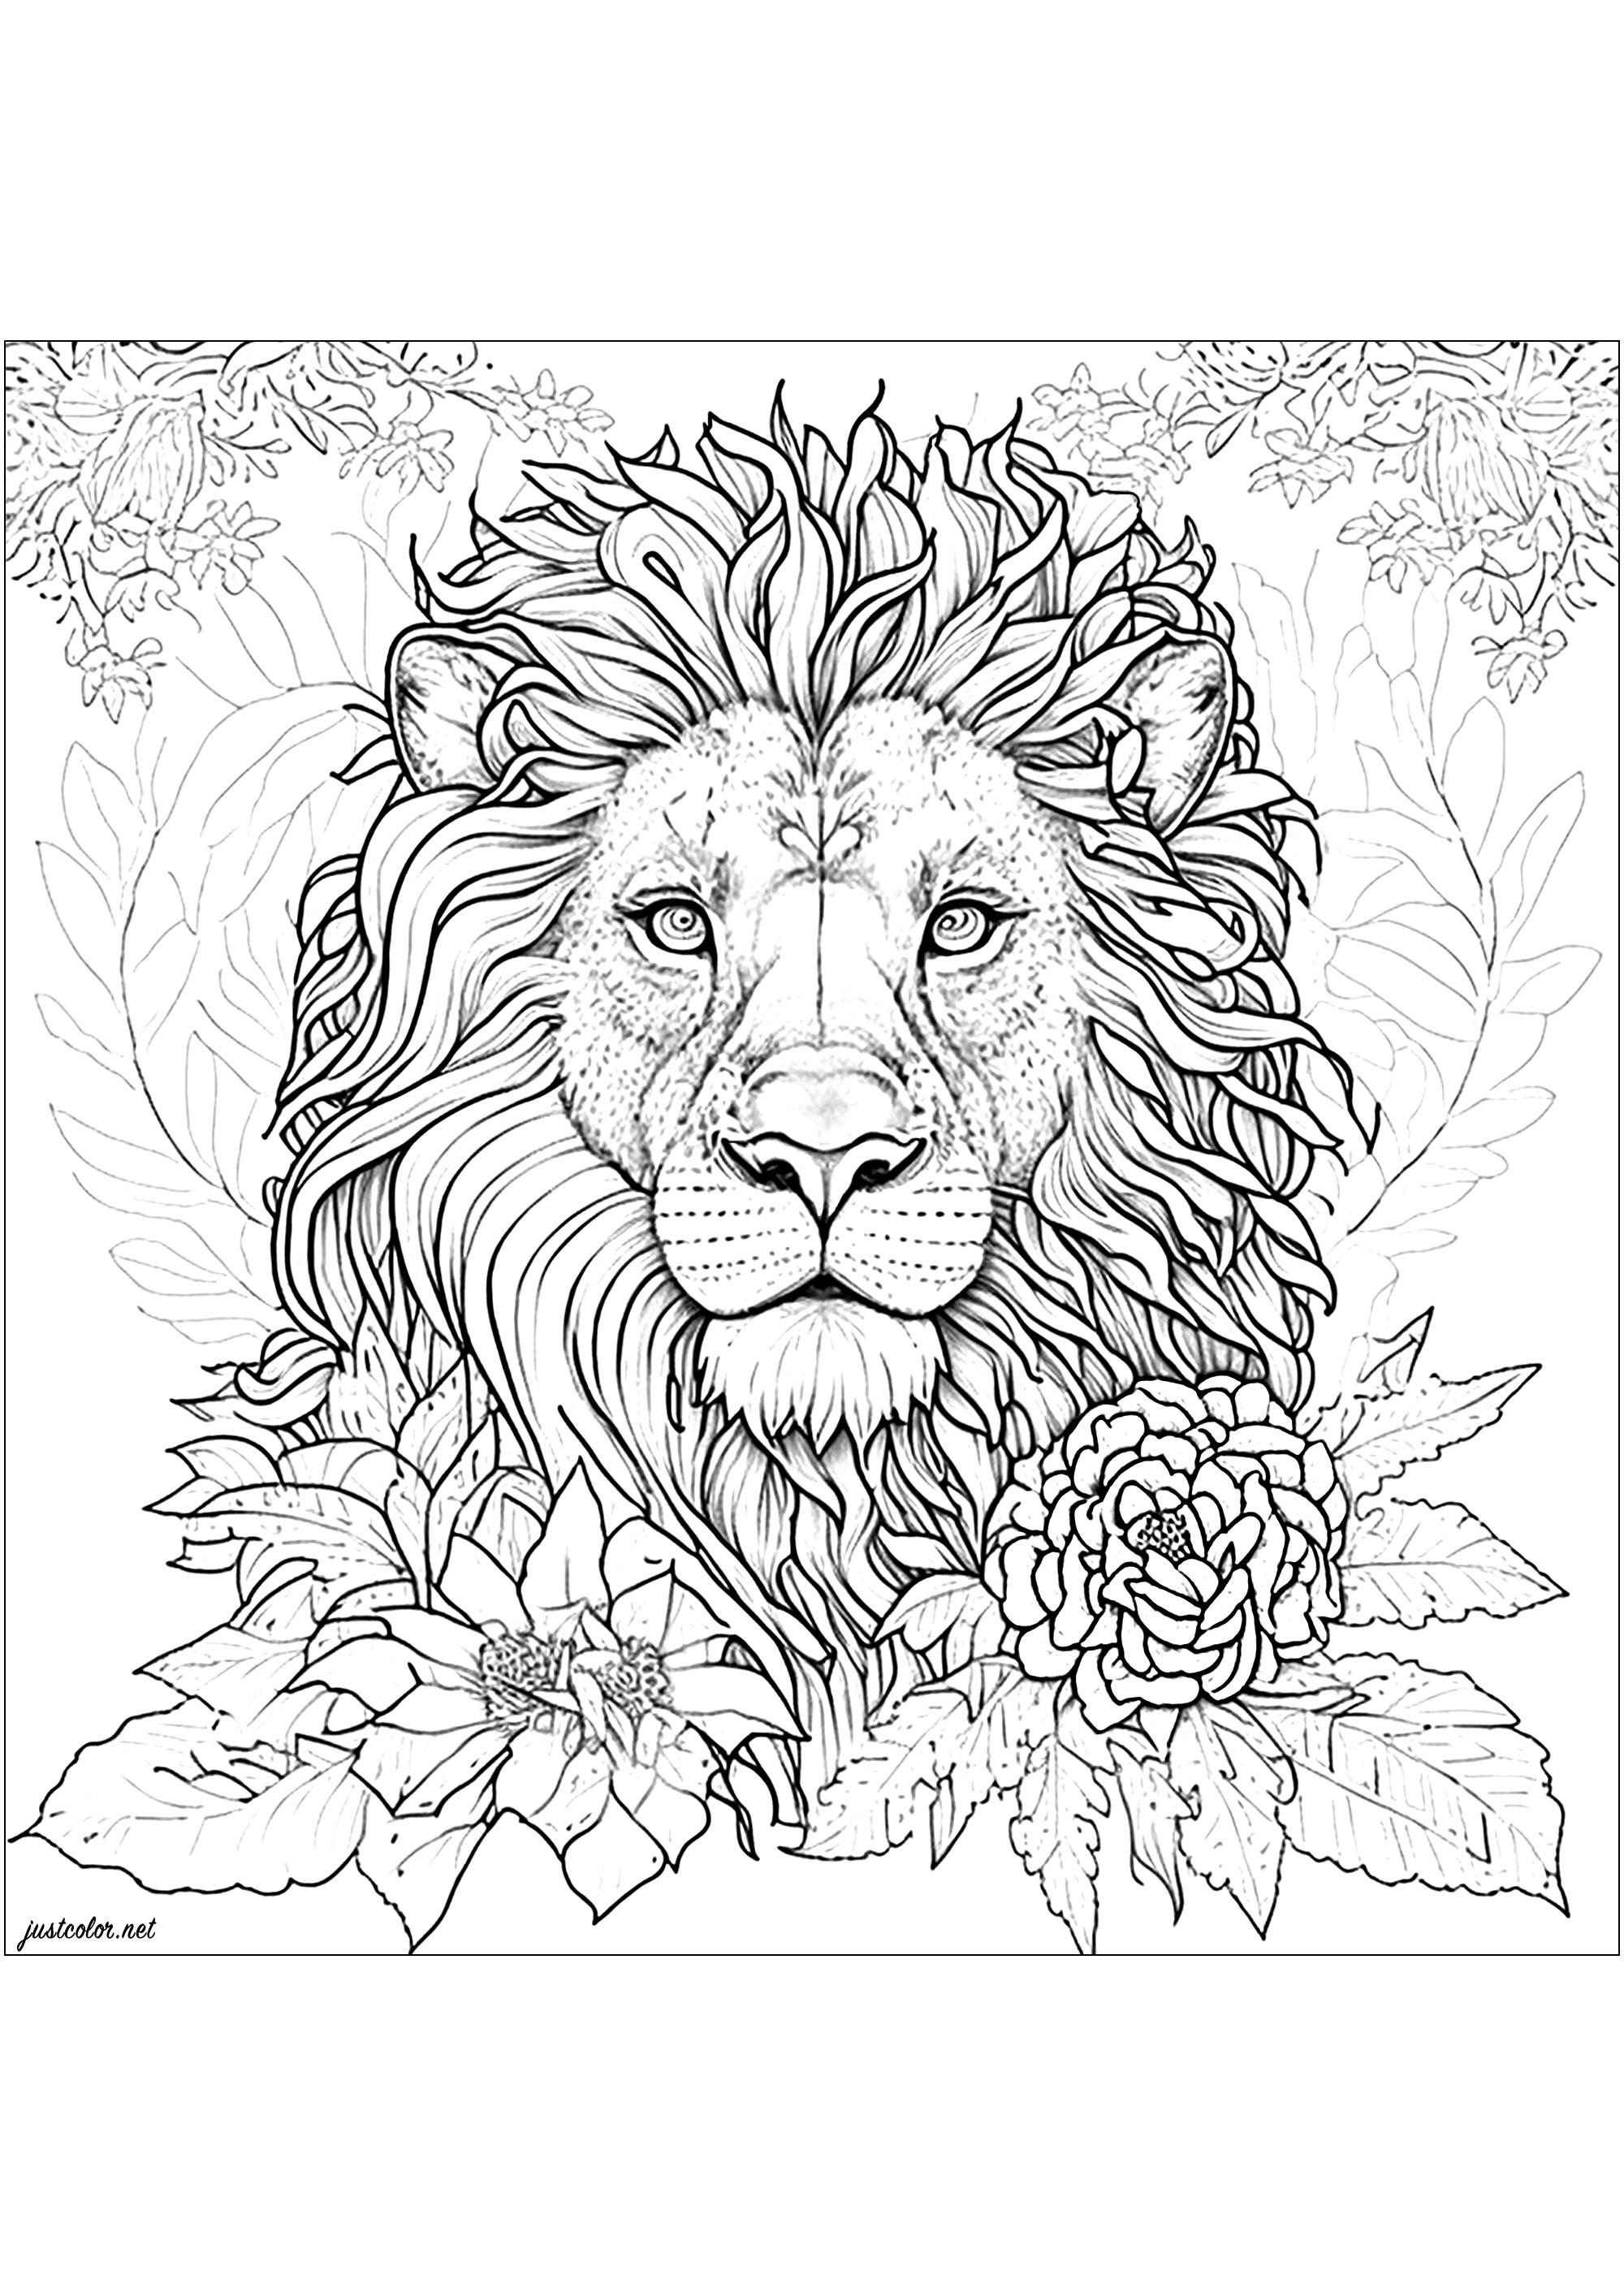 Ausmalung eines Löwen, umgeben von schönen Blumen. Diese Löwenzeichnung ist extrem realistisch und detailliert! Nimm dir Zeit, um jeden Teil seiner schönen Mähne und die gesamte Vegetation, die ihn umgibt, auszumalen.